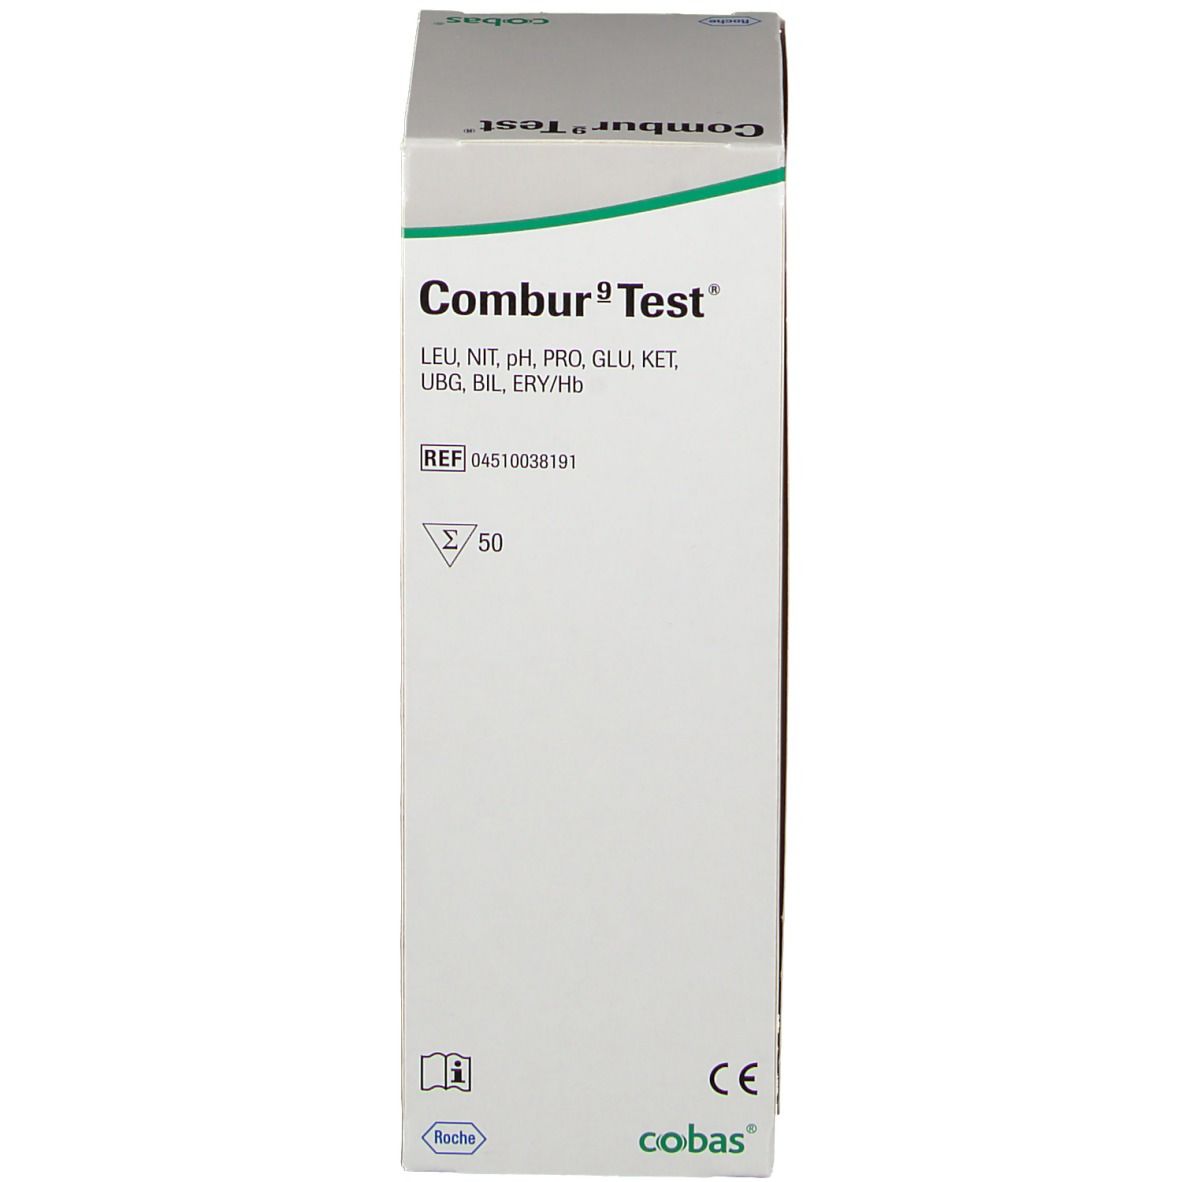 Combur 9 Test® Teststreifen